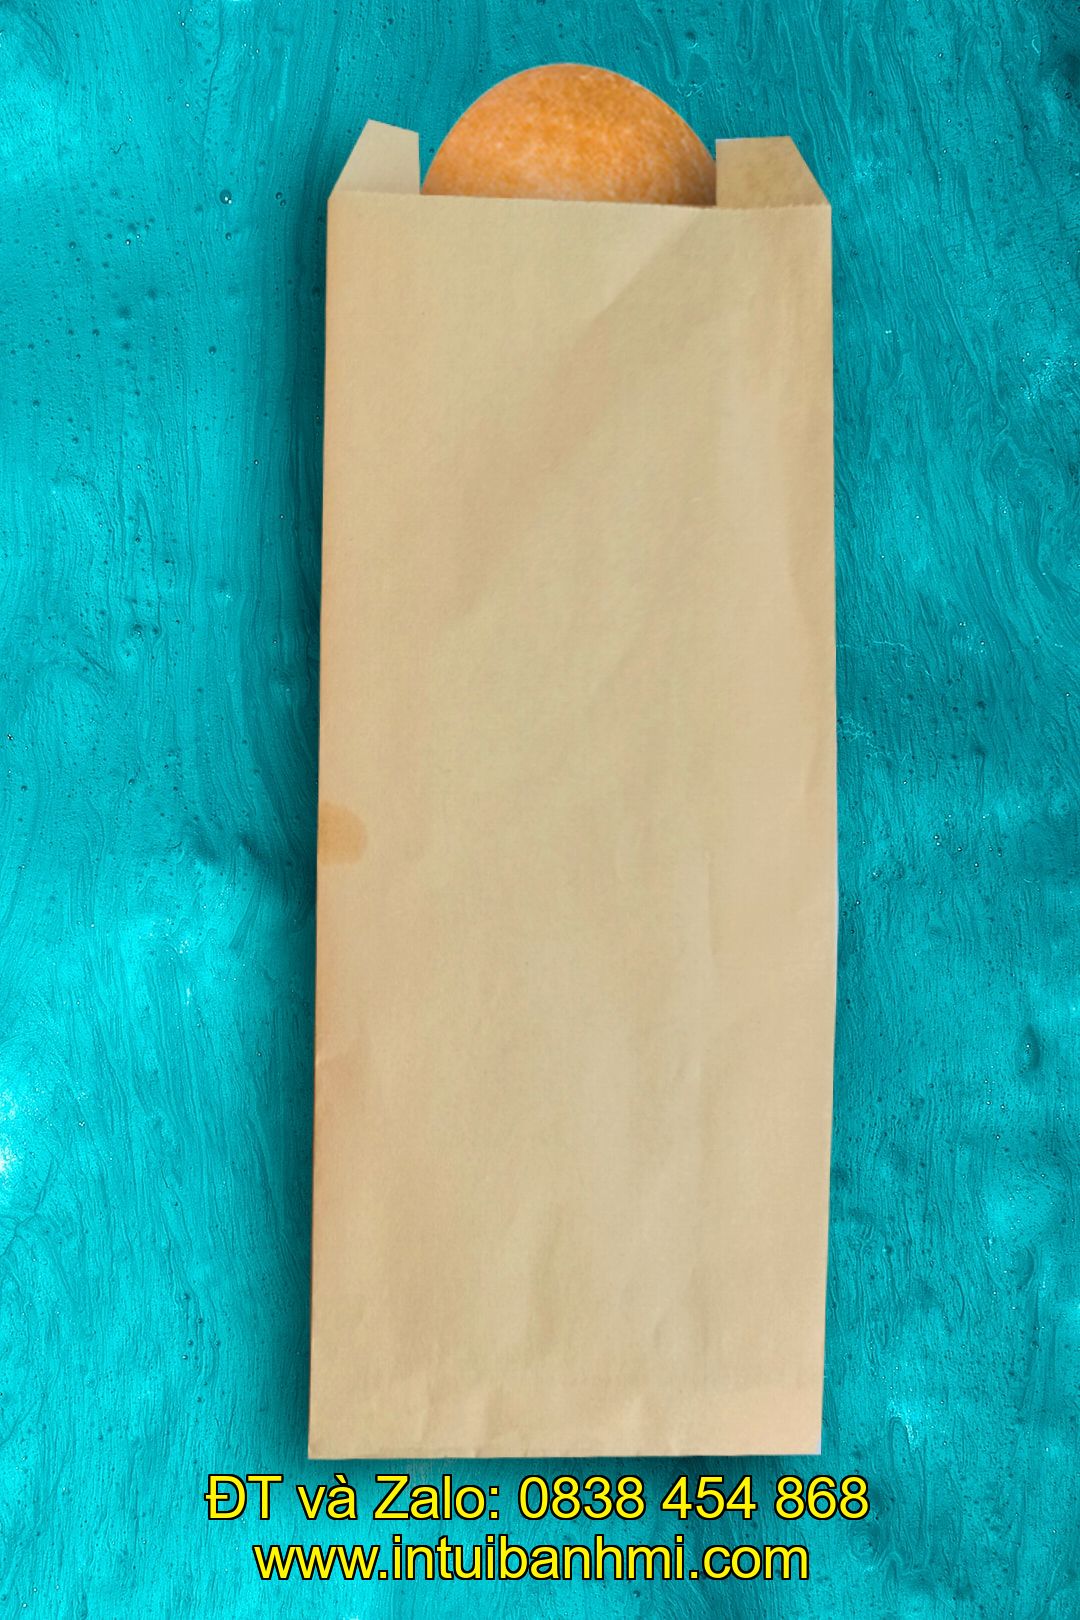 Một số thành phần ảnh hưởng đến chất lượng của các loại bao bì giấy chứa bánh mì